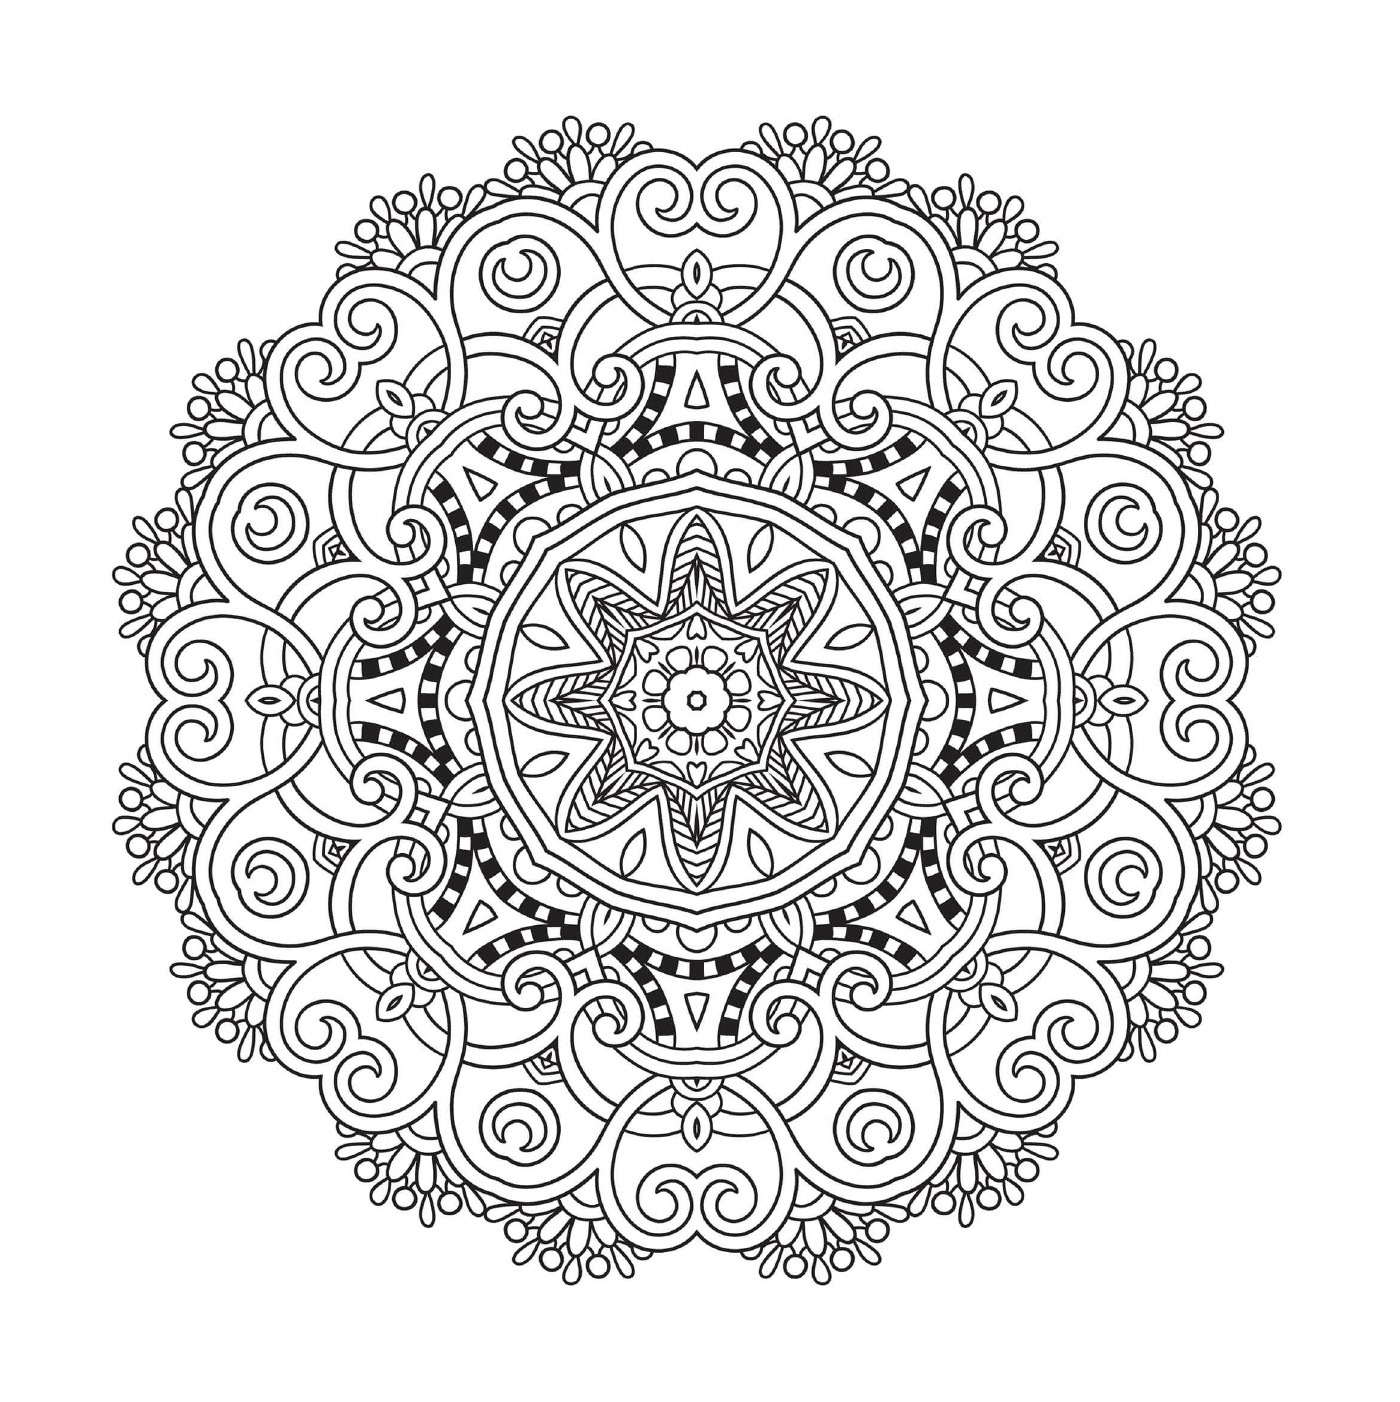  Incredibly detailed Mandala 